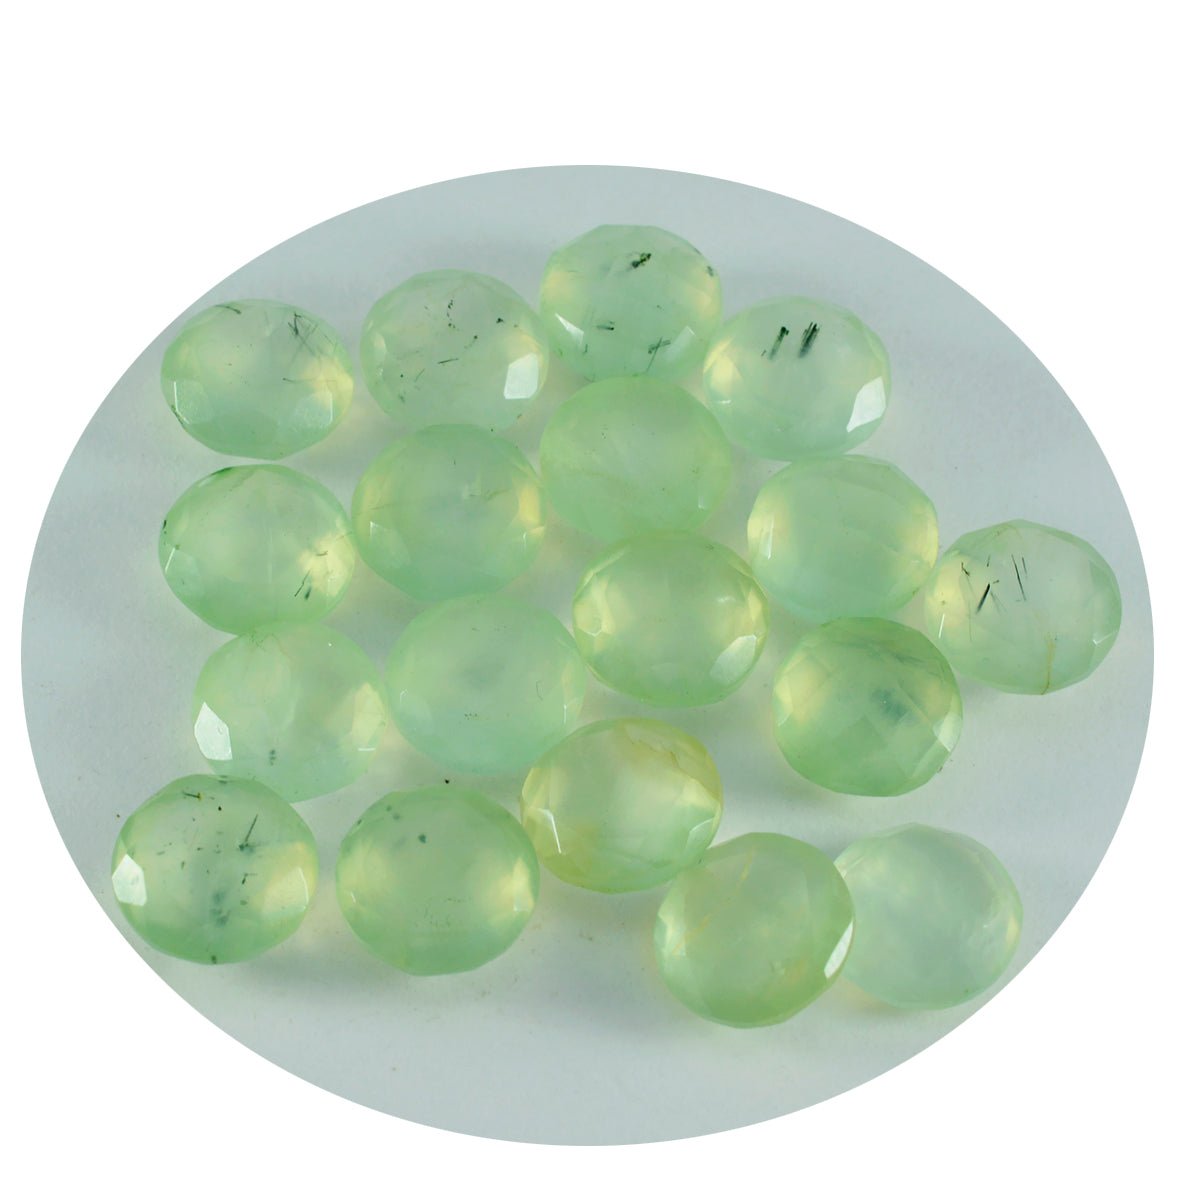 riyogems 1 pieza de prehnita verde facetada de 7x7 mm, forma redonda, una piedra preciosa suelta de calidad